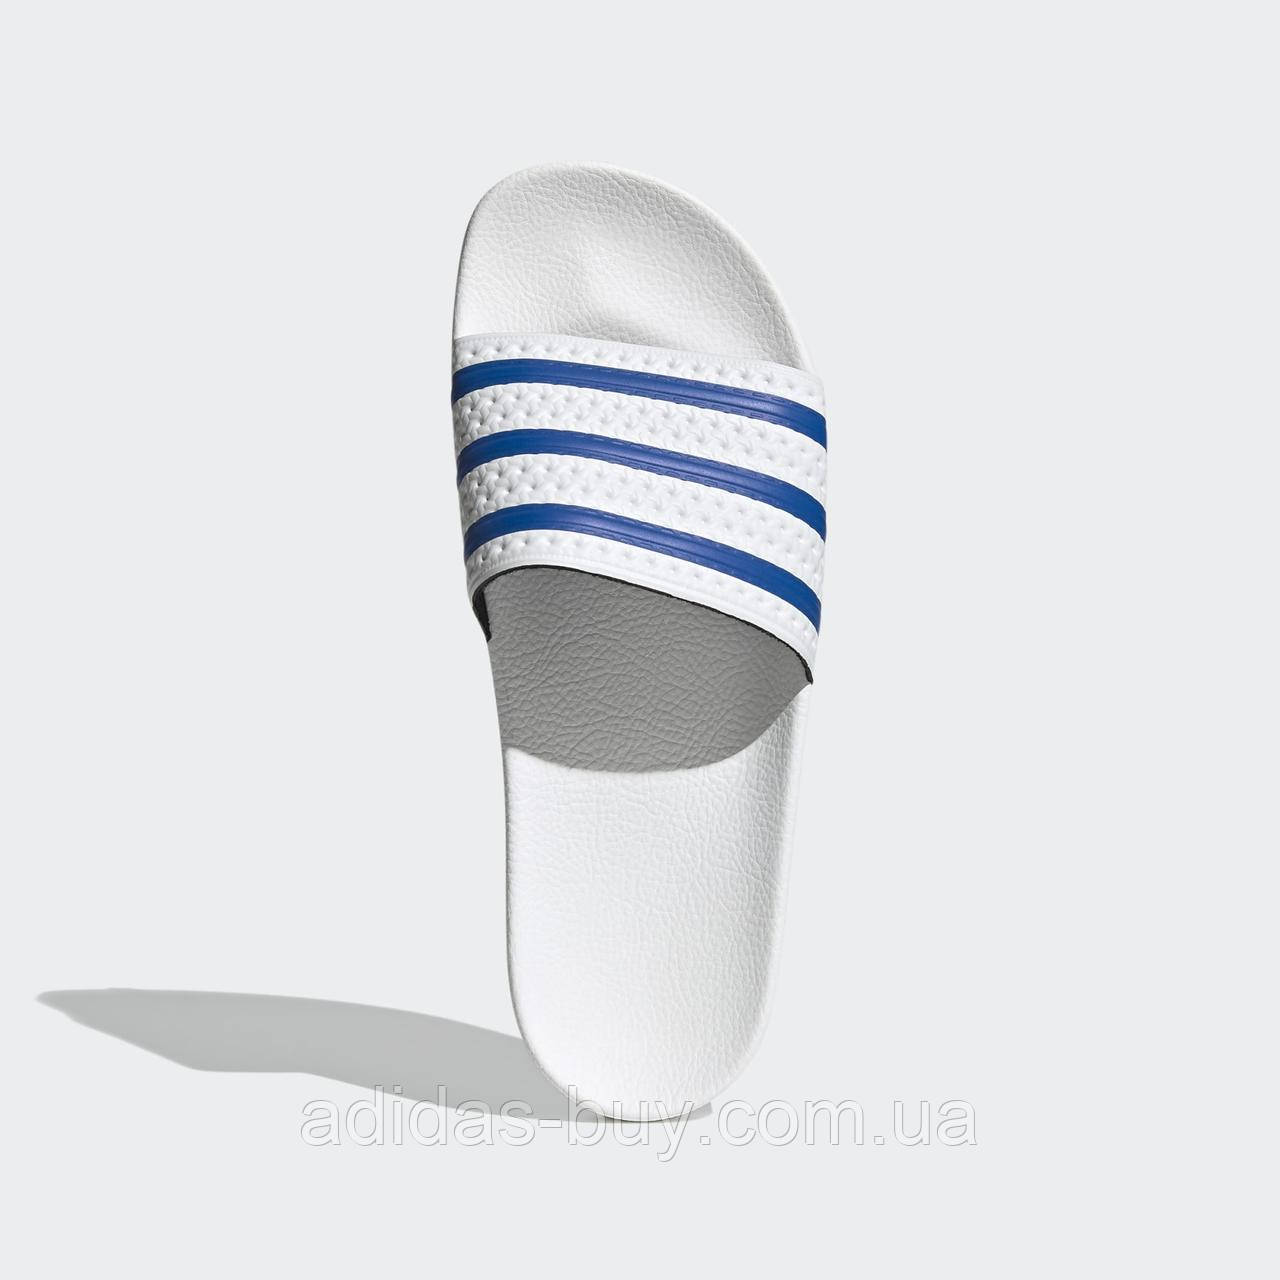 Тапки adidas adilette оригінал чоловічі білі капці